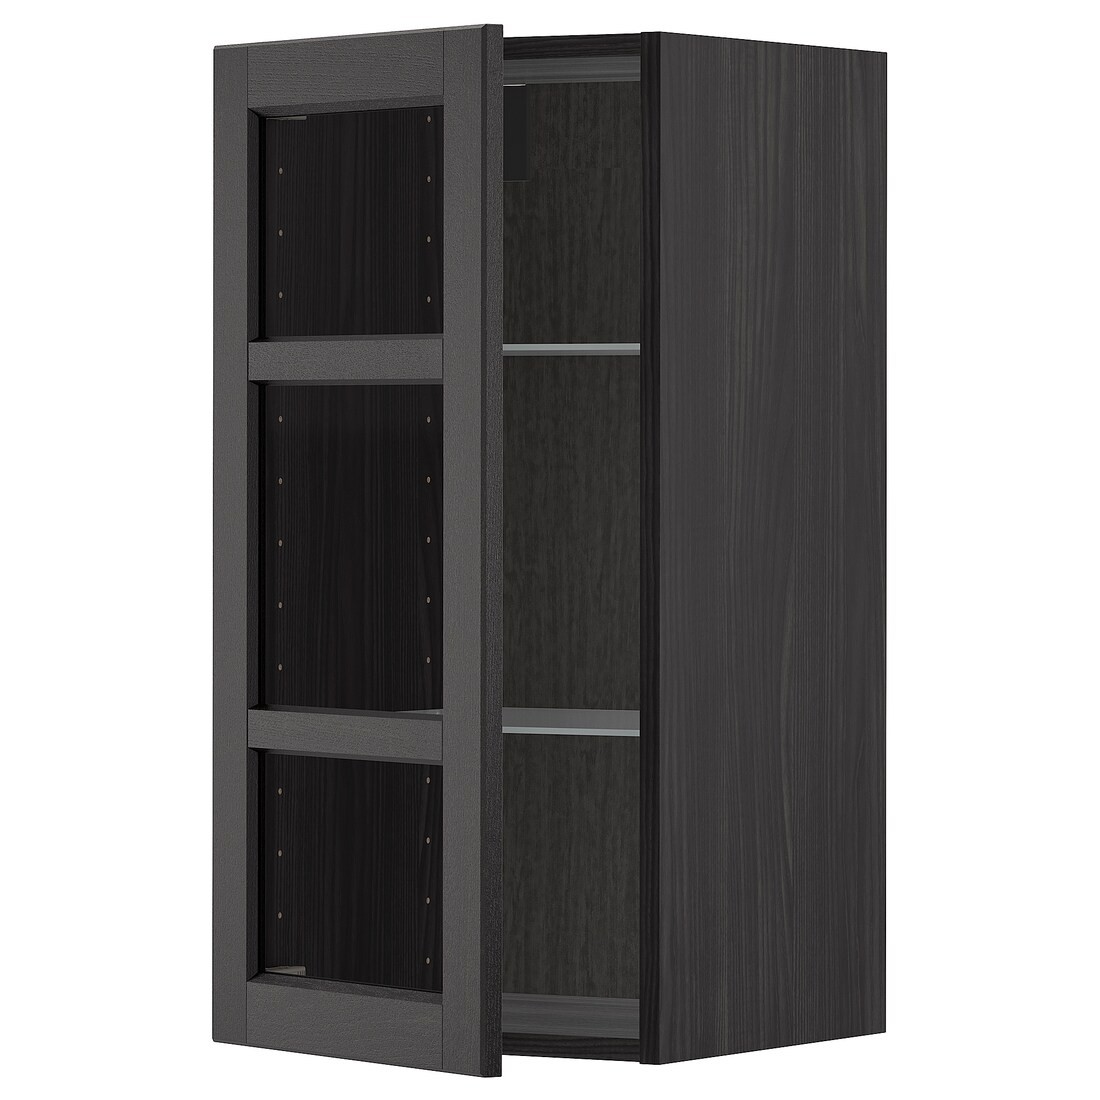 METOD МЕТОД Навесной шкаф, черный / Lerhyttan черная морилка, 40x80 см